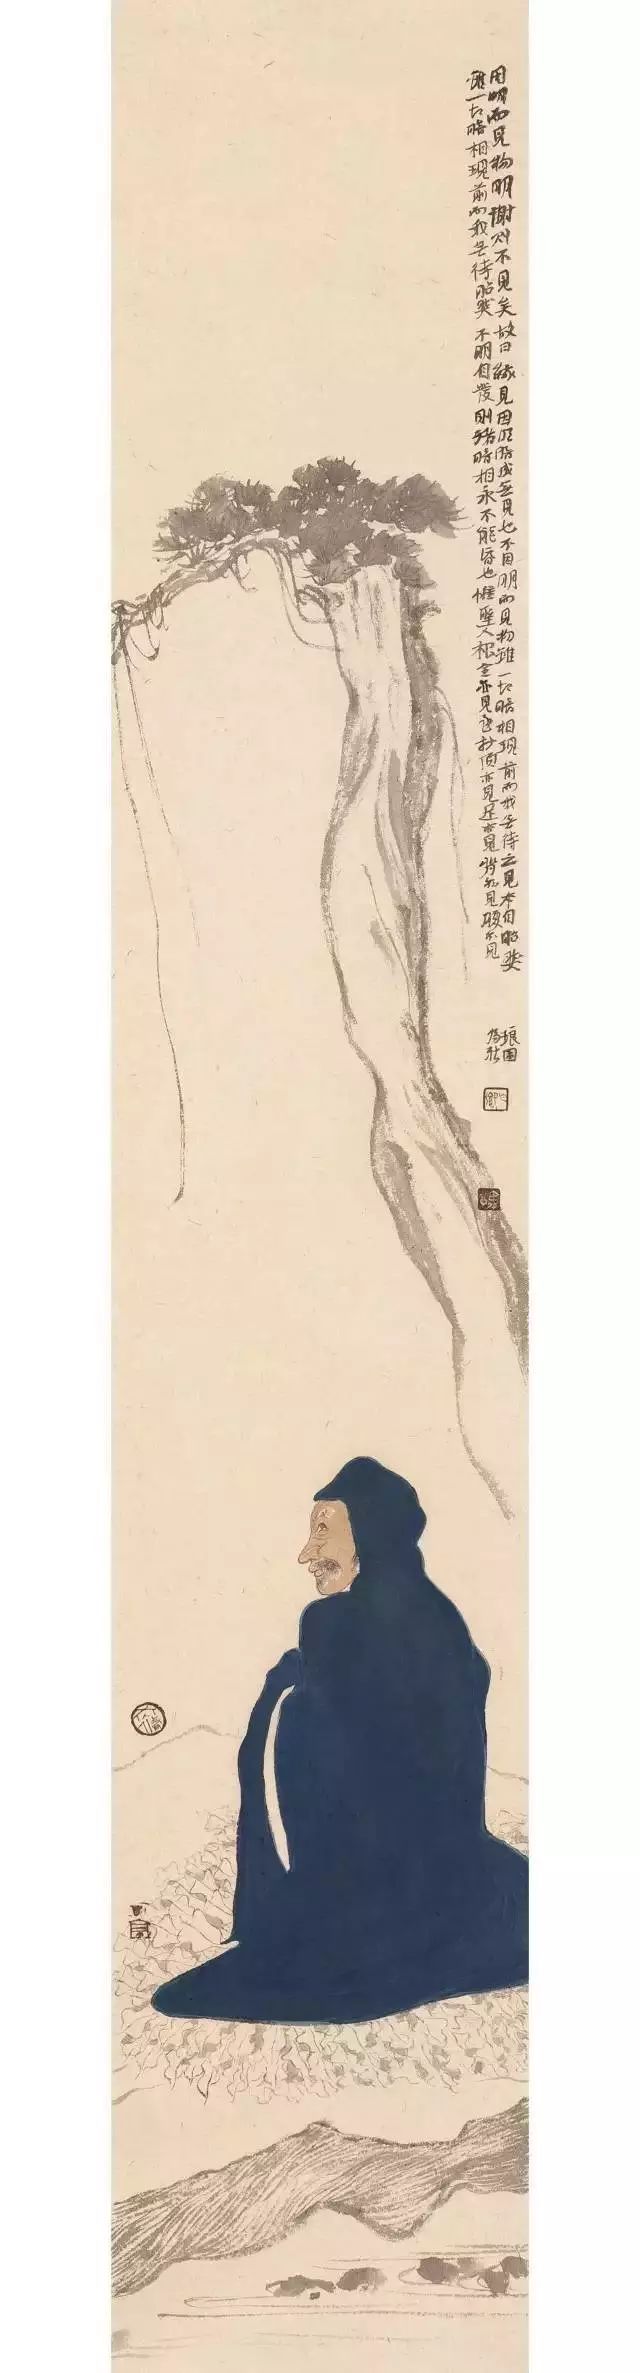 道艺双臻——中国画名家作品品鉴展